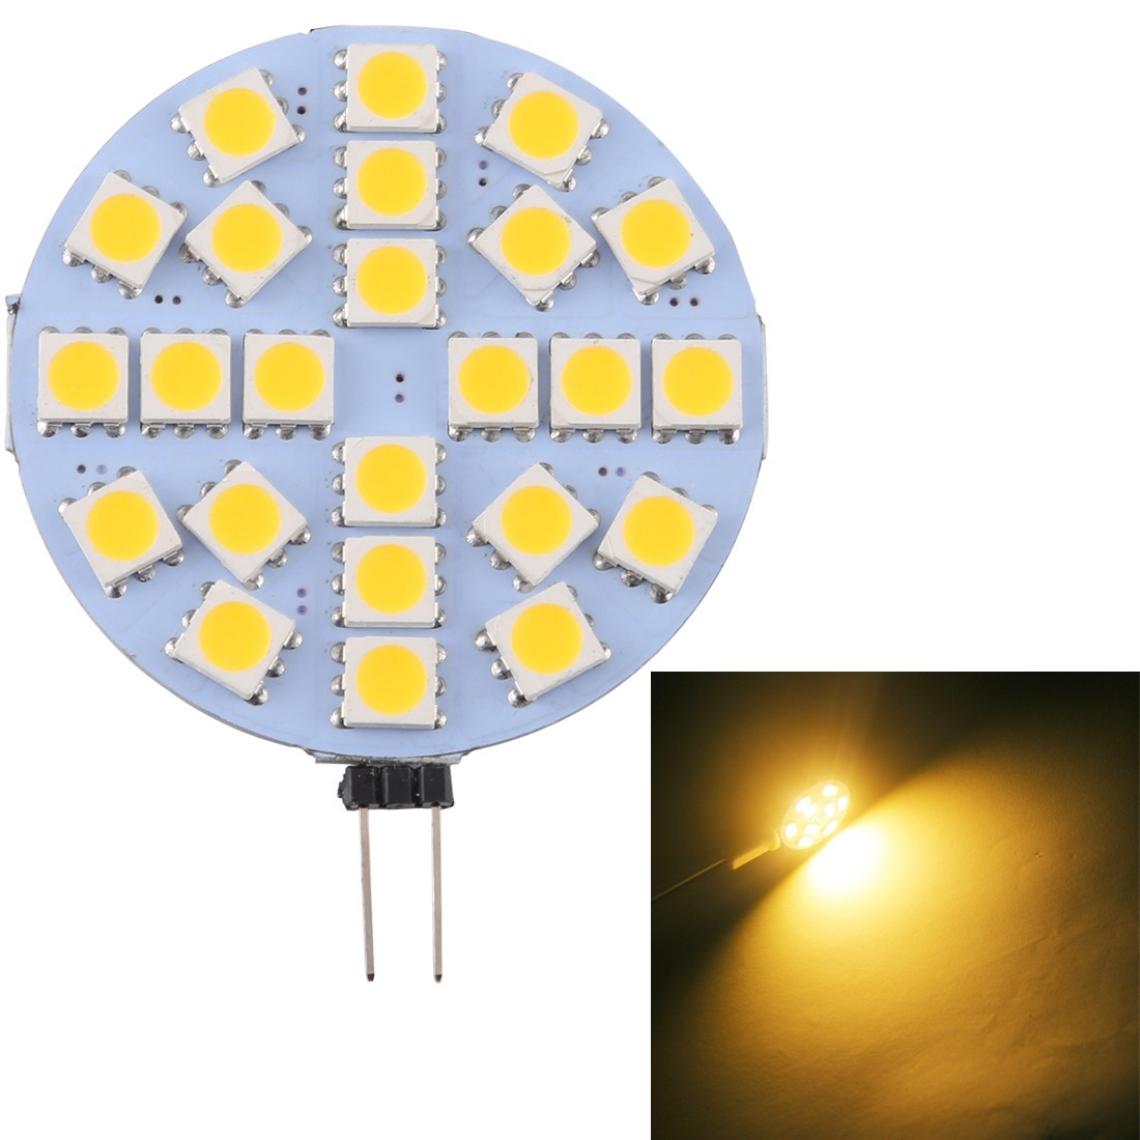 Wewoo - G4 24 LEDs SMD 5050 288LM 2800-3200K Ampoule de lampe à culot à intensité variable à variableDC 12V blanc chaud - Ampoules LED